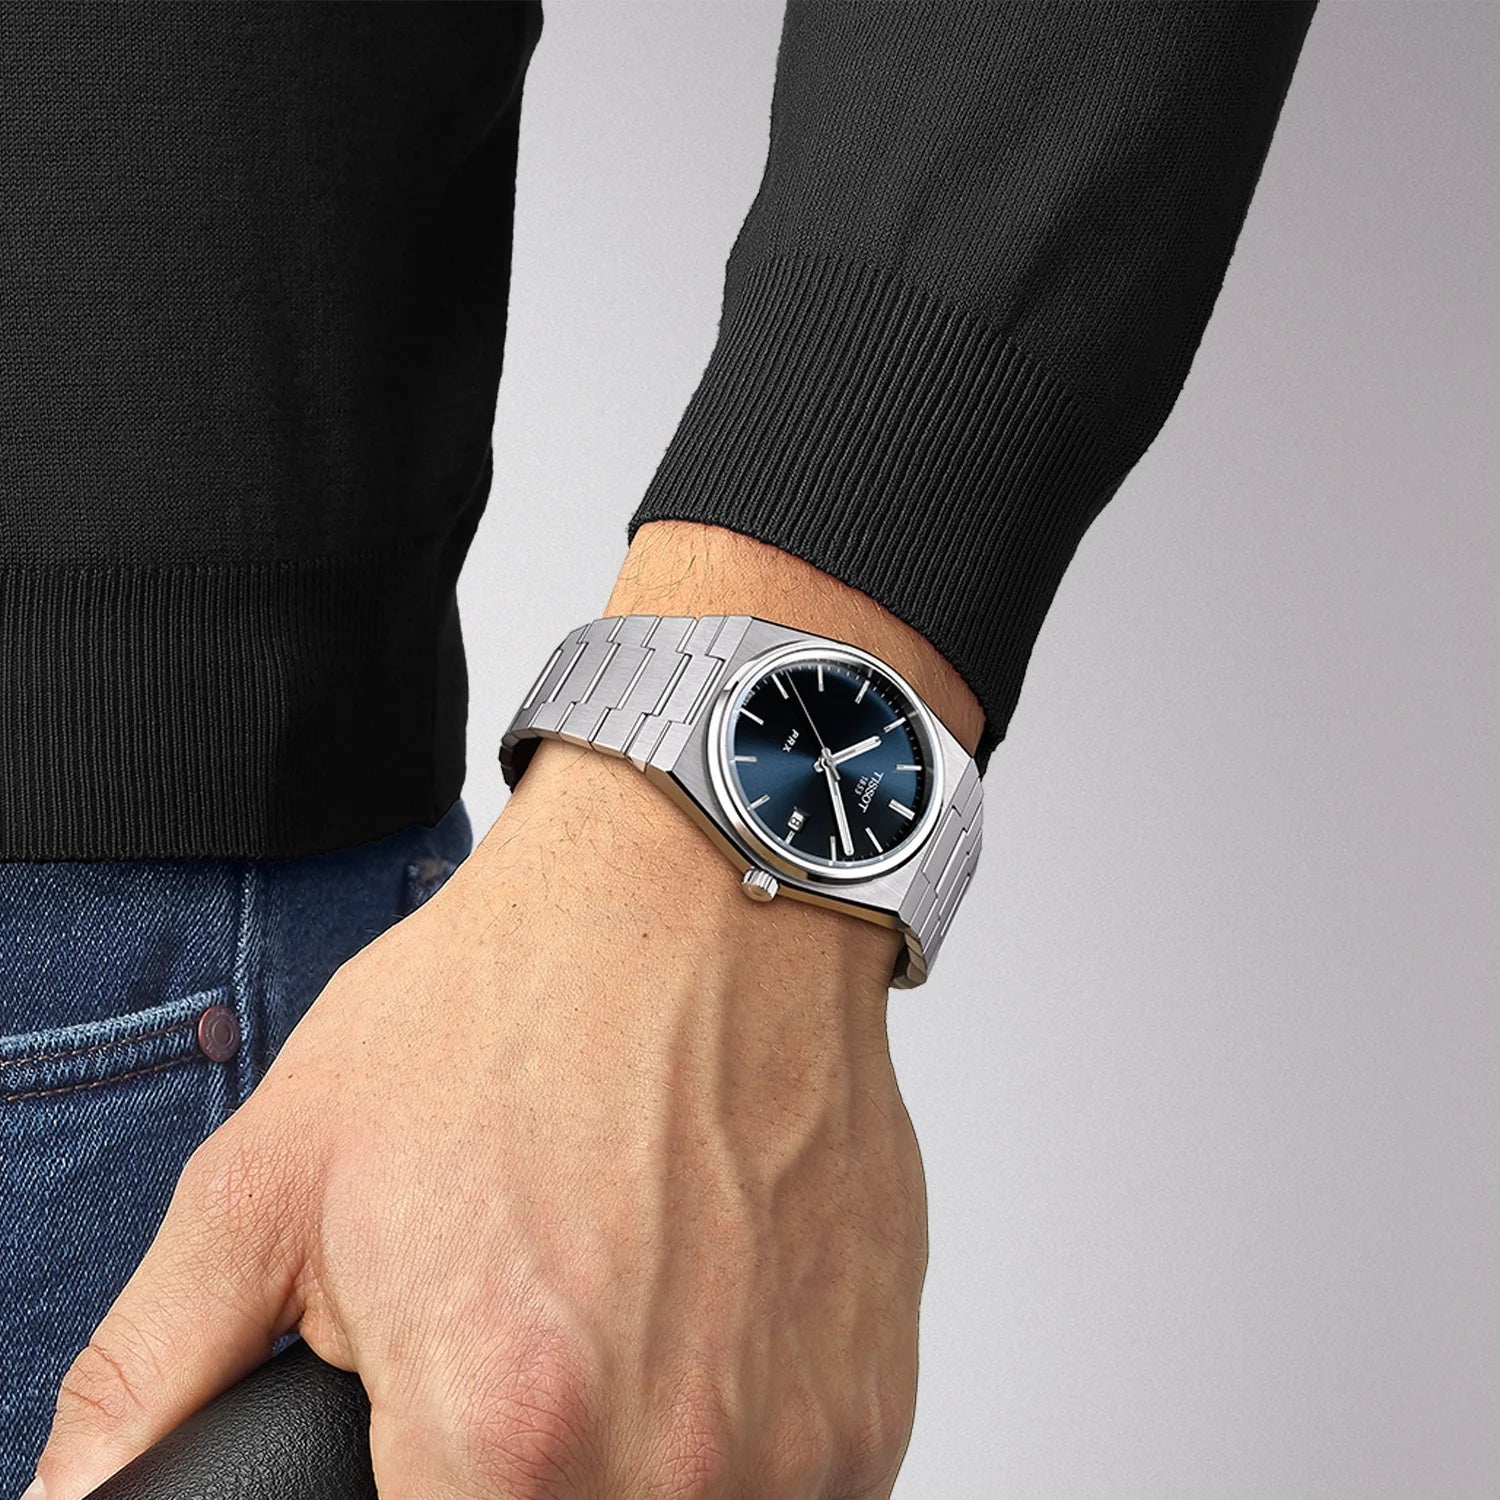 Tissot PRX Herrenarmbanduhr mit silber Handgelenk und Blau Zifferblatt ist bei MyGeschenk zu attraktiven Preisen und versandkostenfrei. 